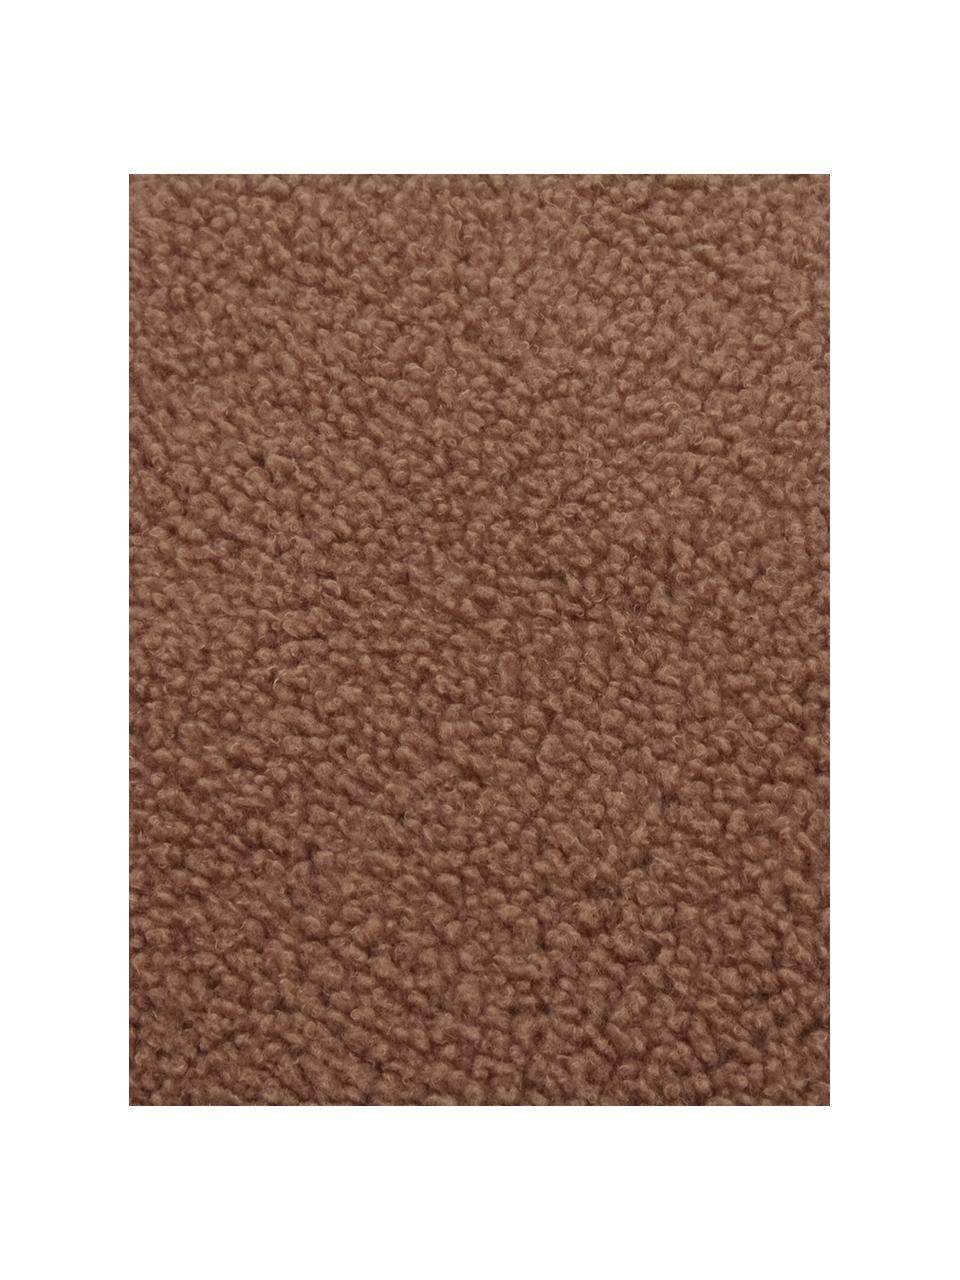 Zachte teddy-kussenhoes Mille in bruin, Bruin, B 30 x L 50 cm